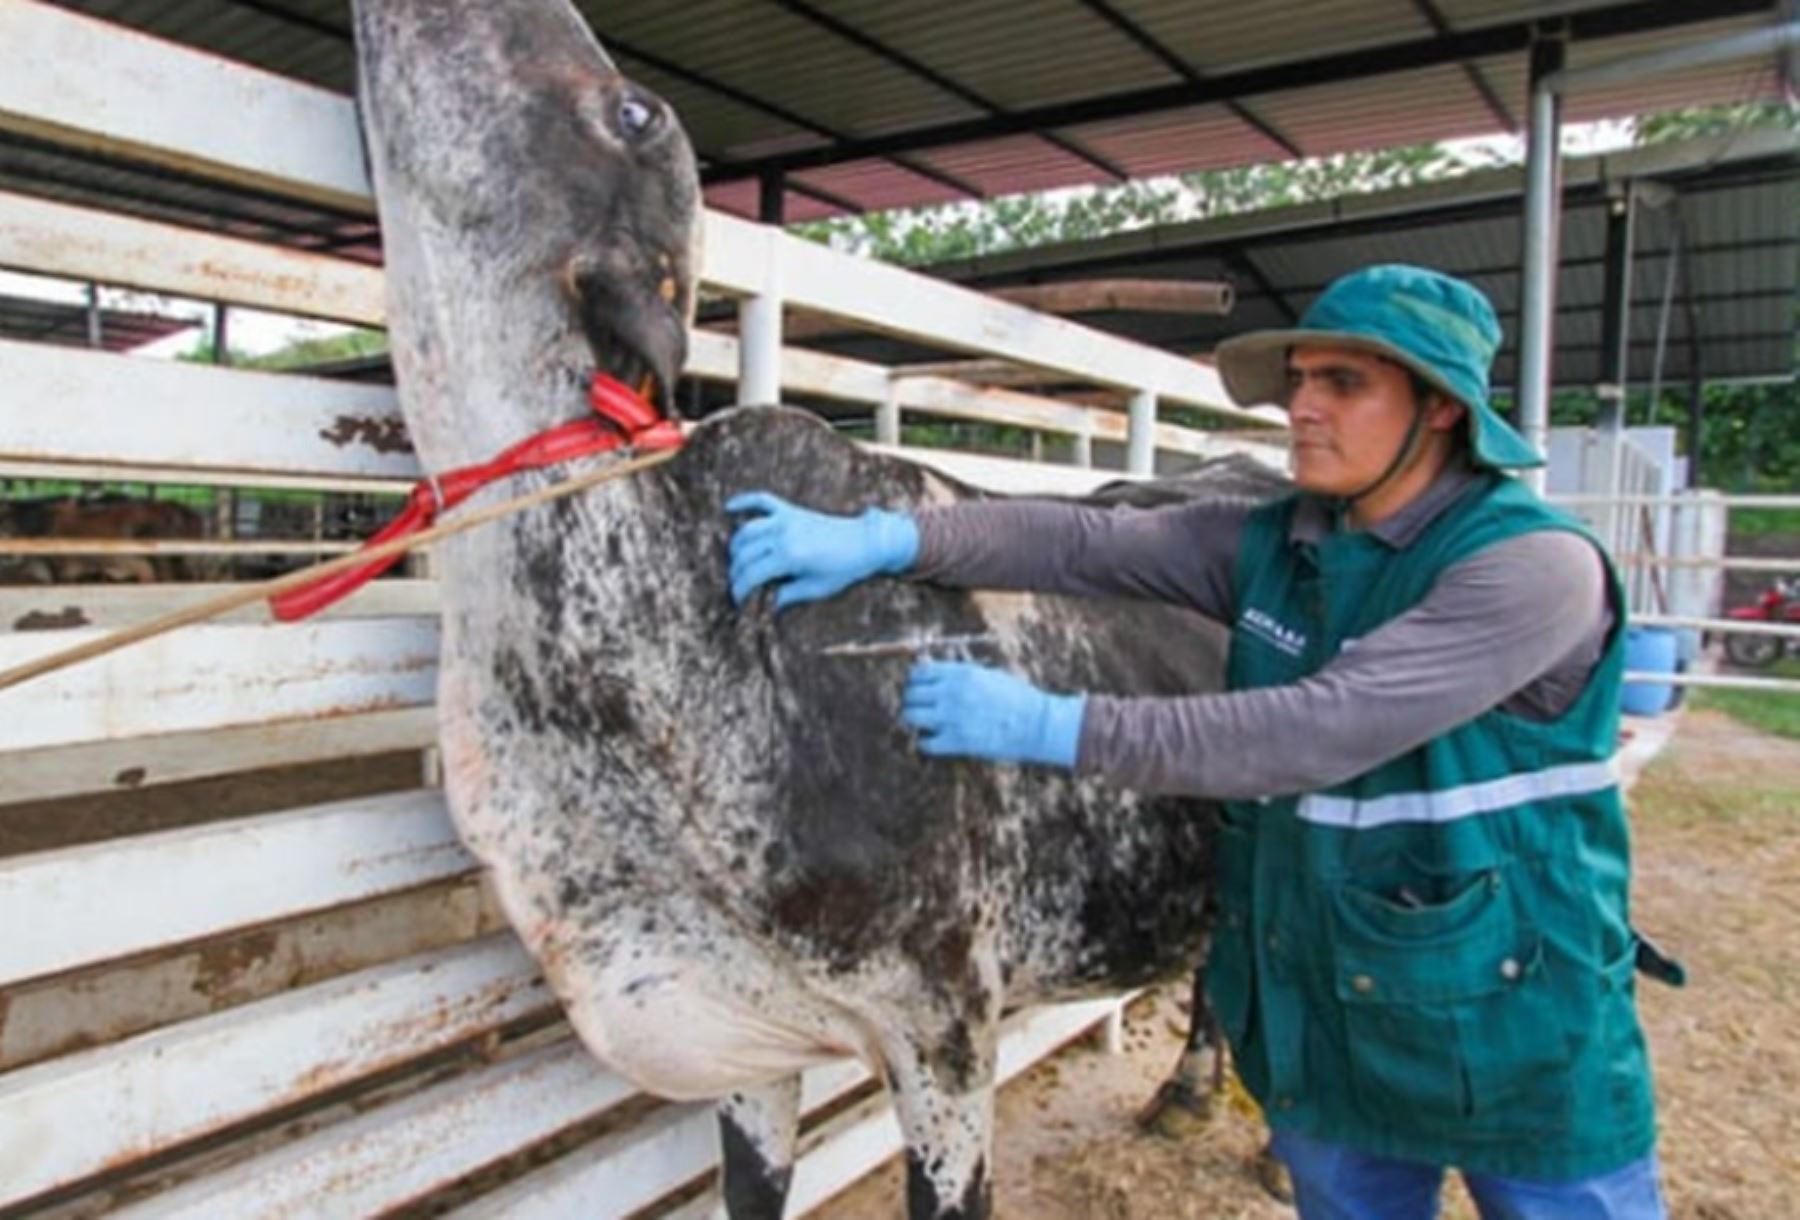 El Gobierno, a través del Ministerio de Desarrollo Agrario y Riego (Midagri) anunció que vacunará a 261,754 cabezas de ganado, en 16 regiones del país, para prevenir y controlar la aparición de casos de rabia en la ganadería familiar.